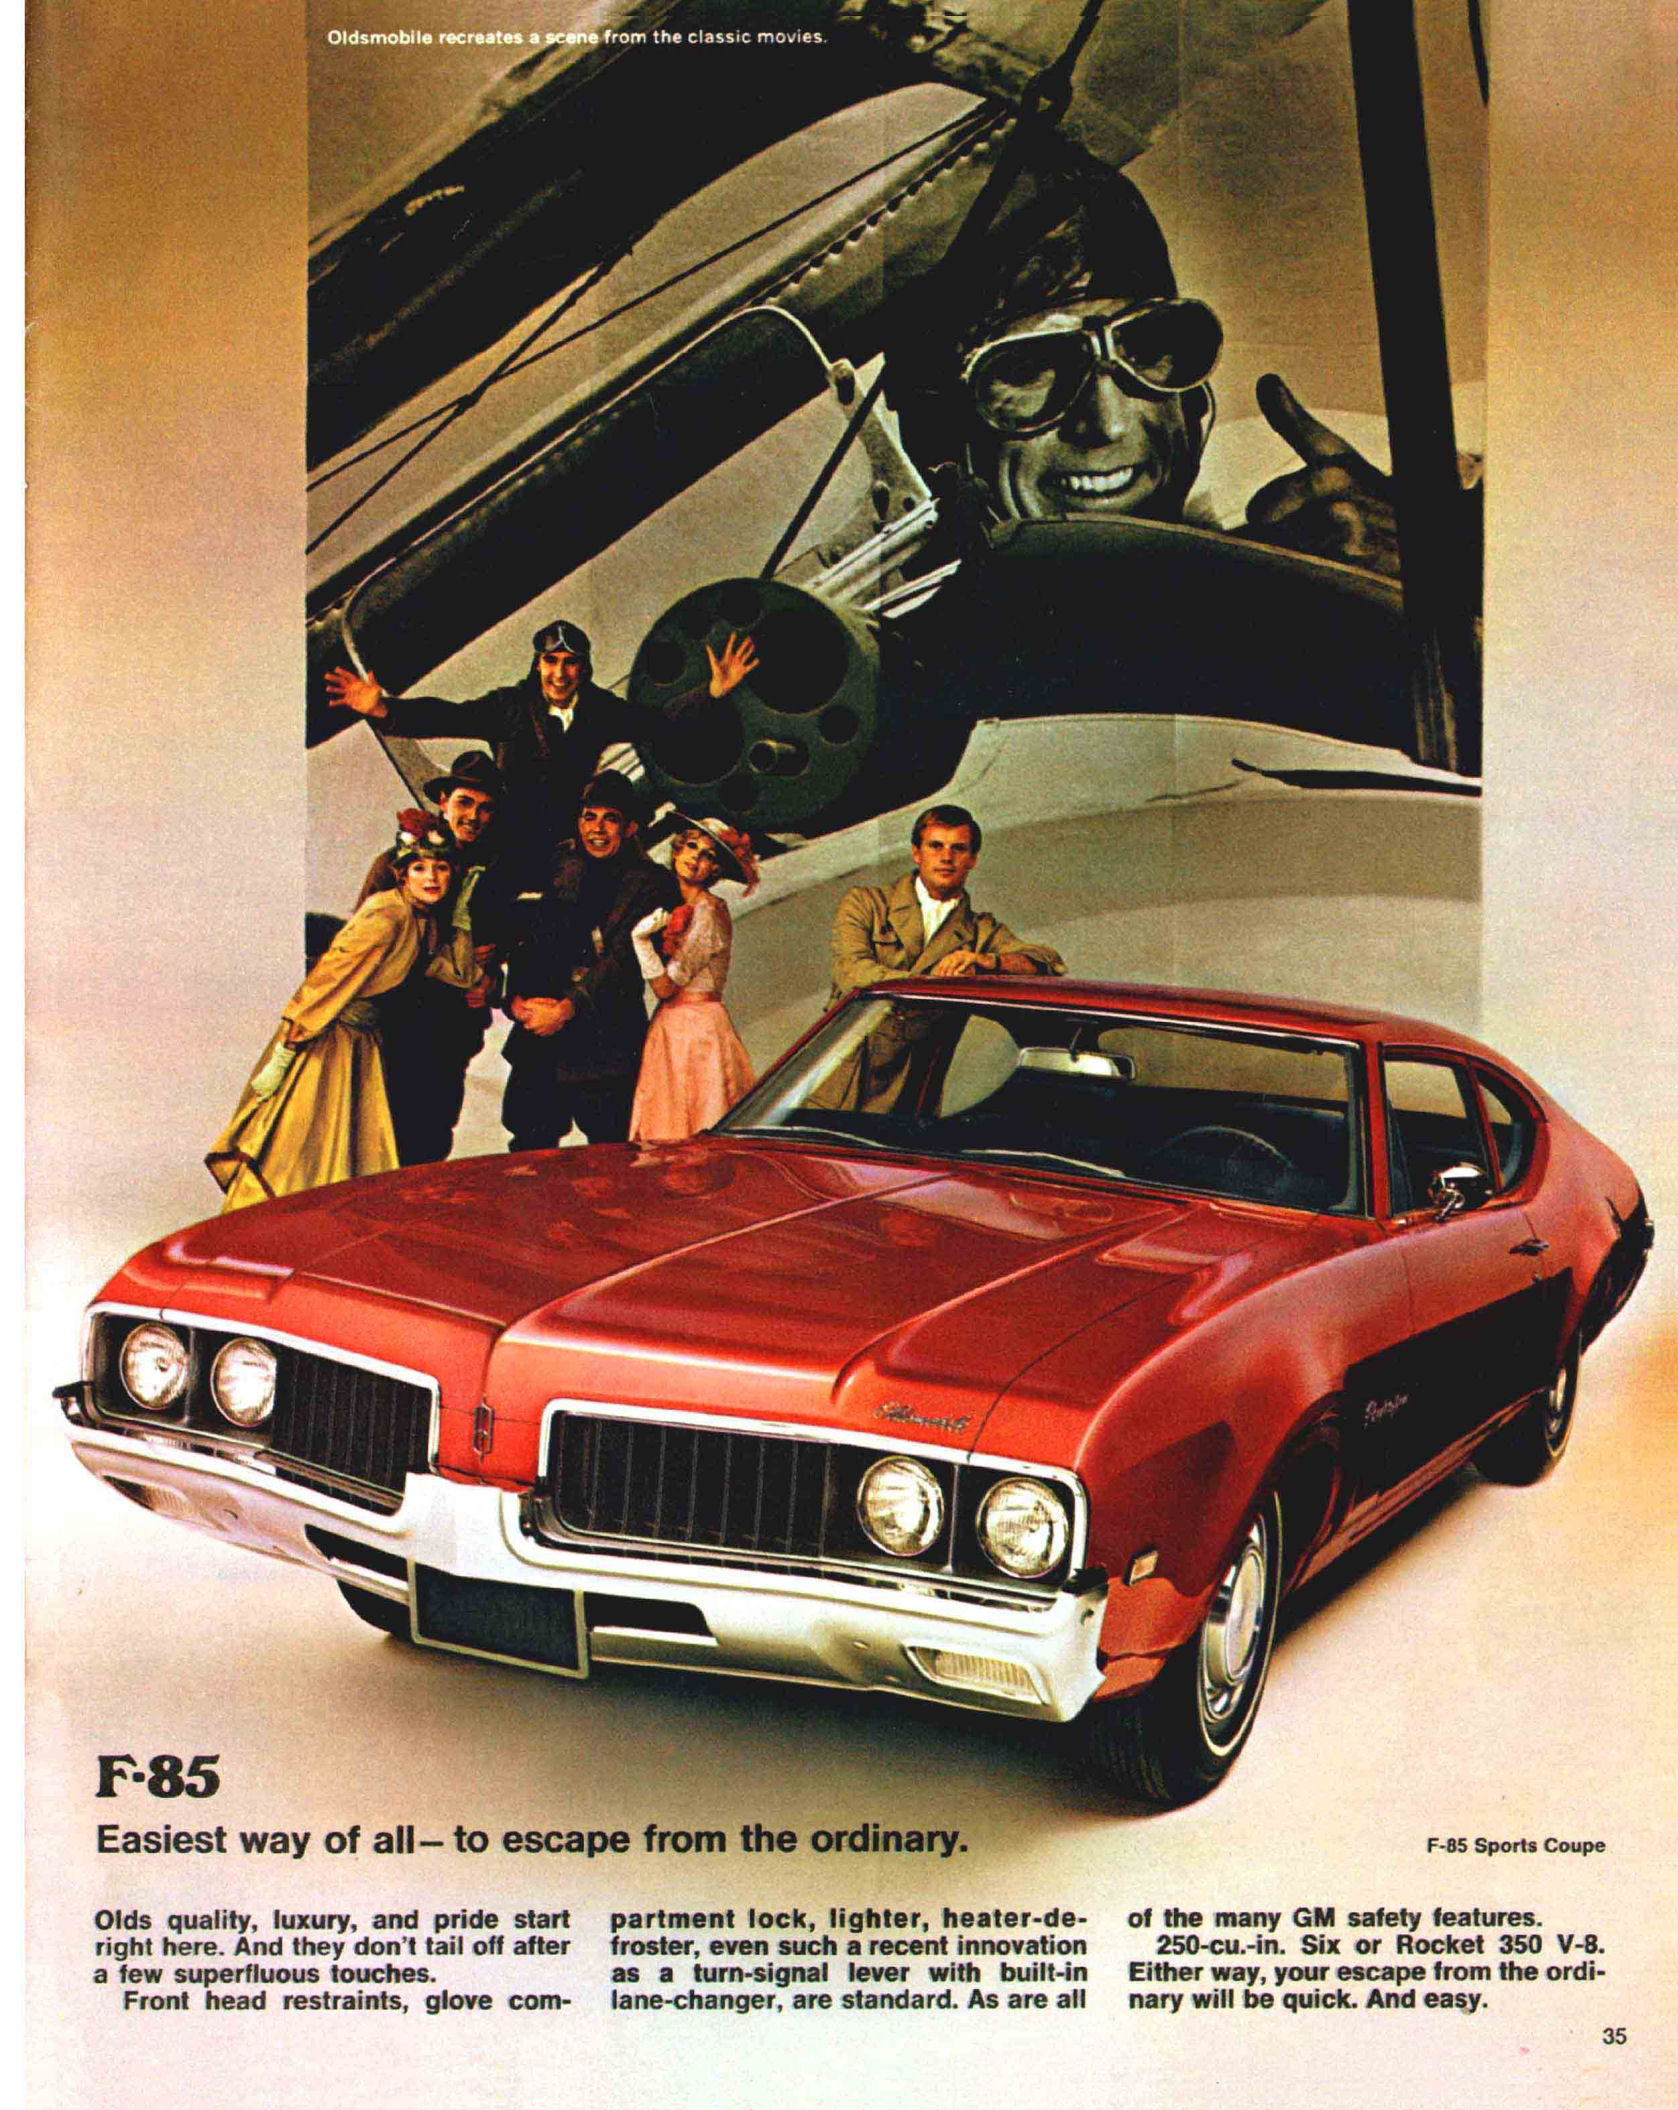 1969_Oldsmobile_Full_Line_Prestige-35